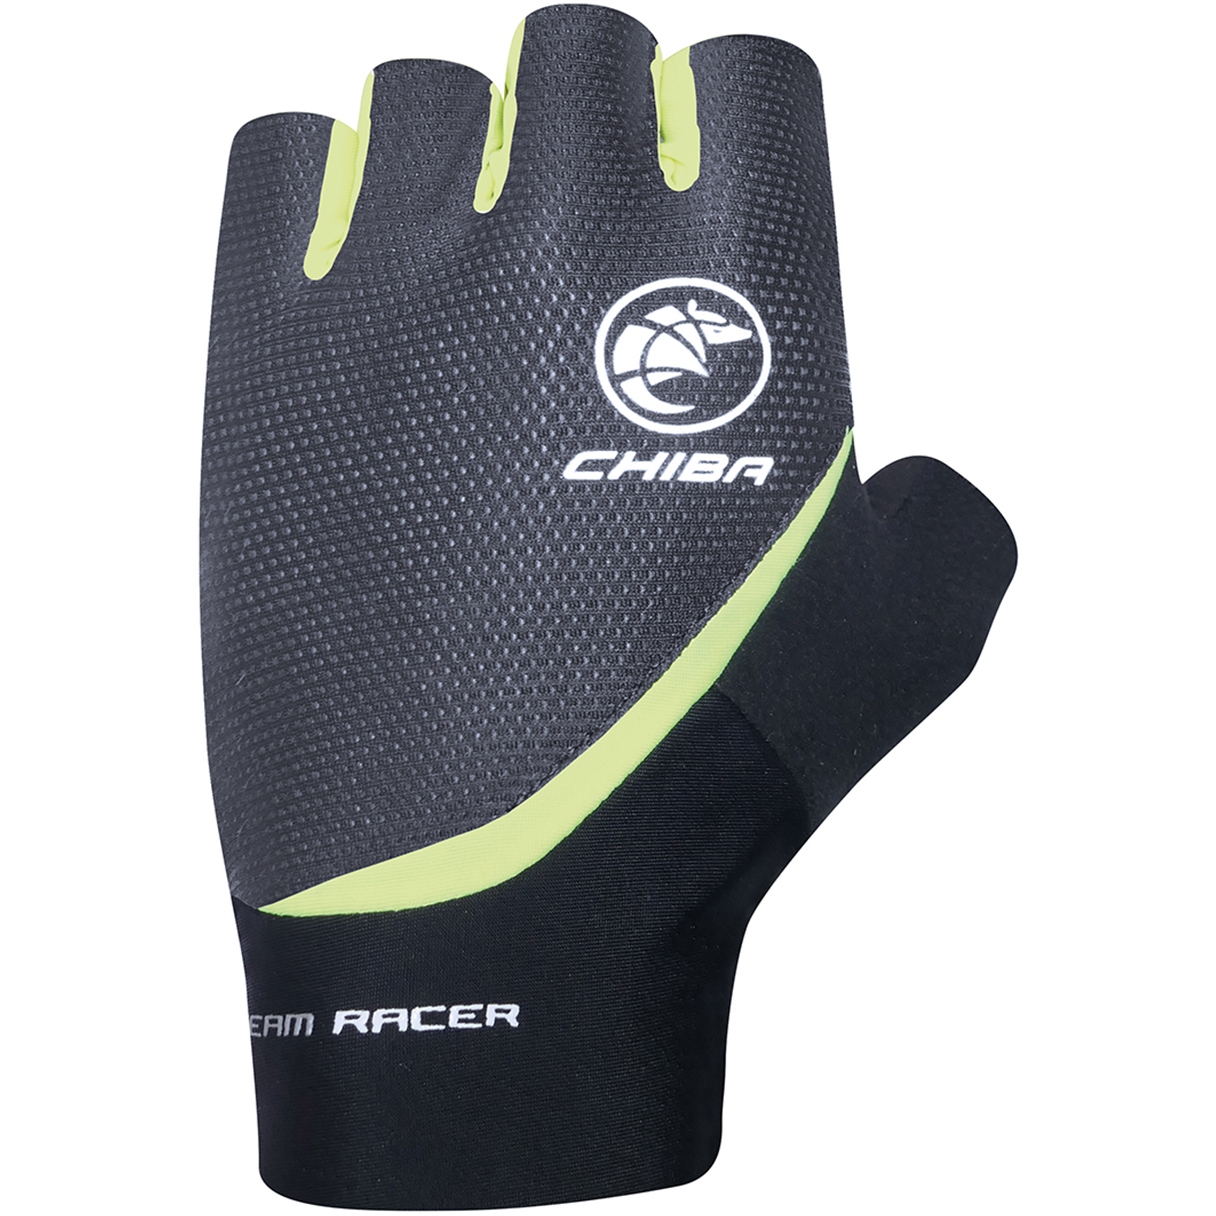 Produktbild von Chiba Team Racer Kurzfinger-Handschuhe - schwarz